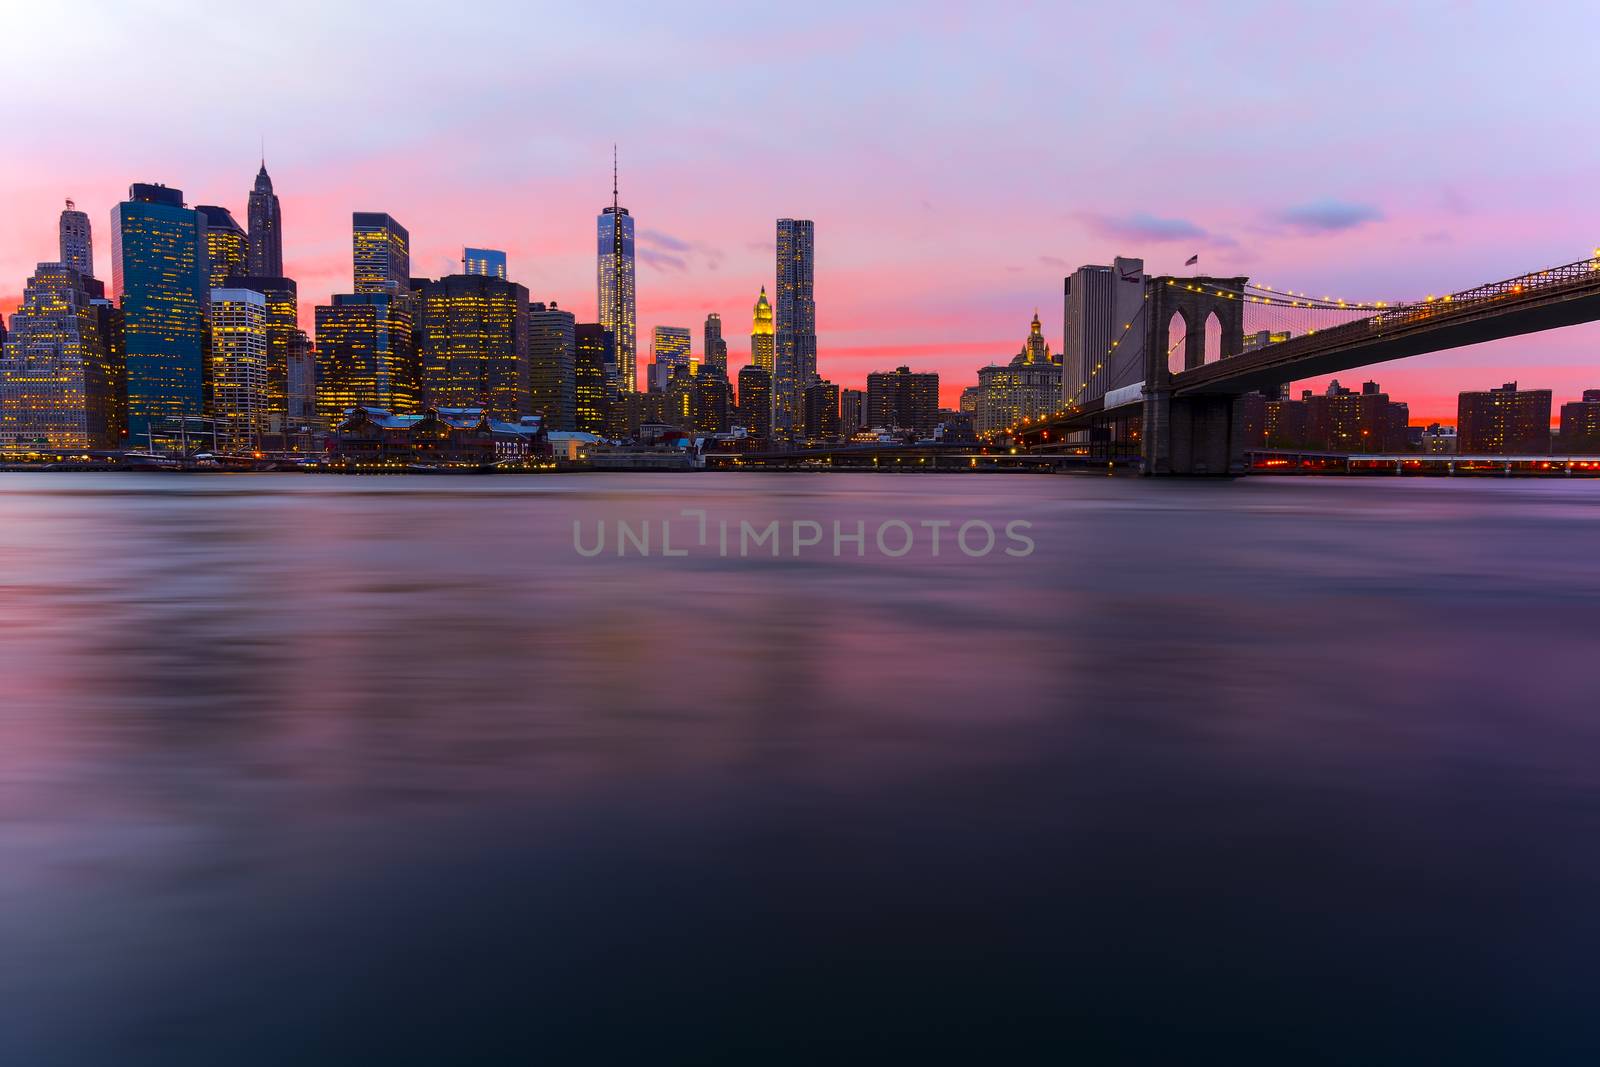 New York skyline by Iko